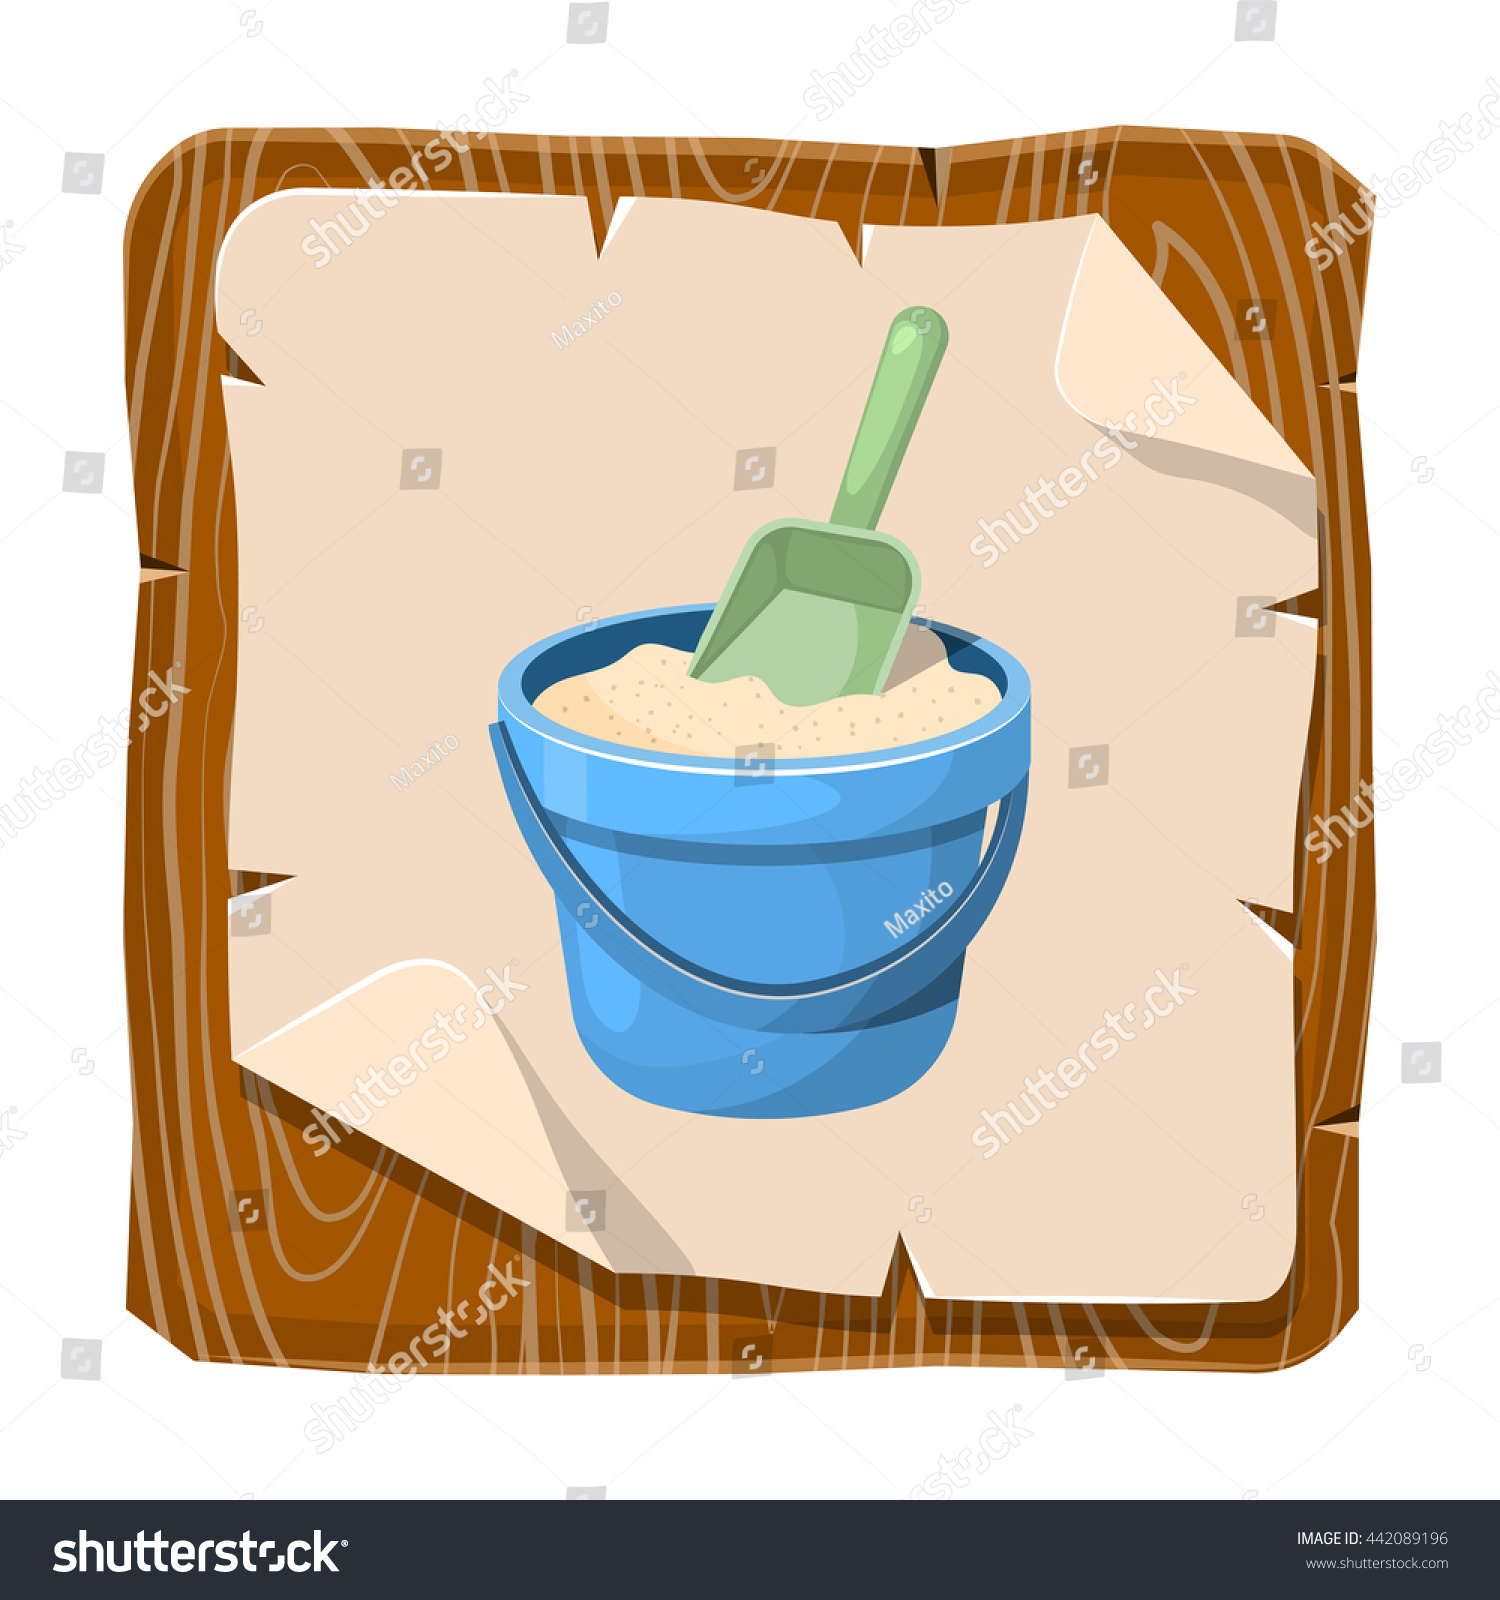 Edit Vectors Free Online - With sand bucket | Shutterstock Editor